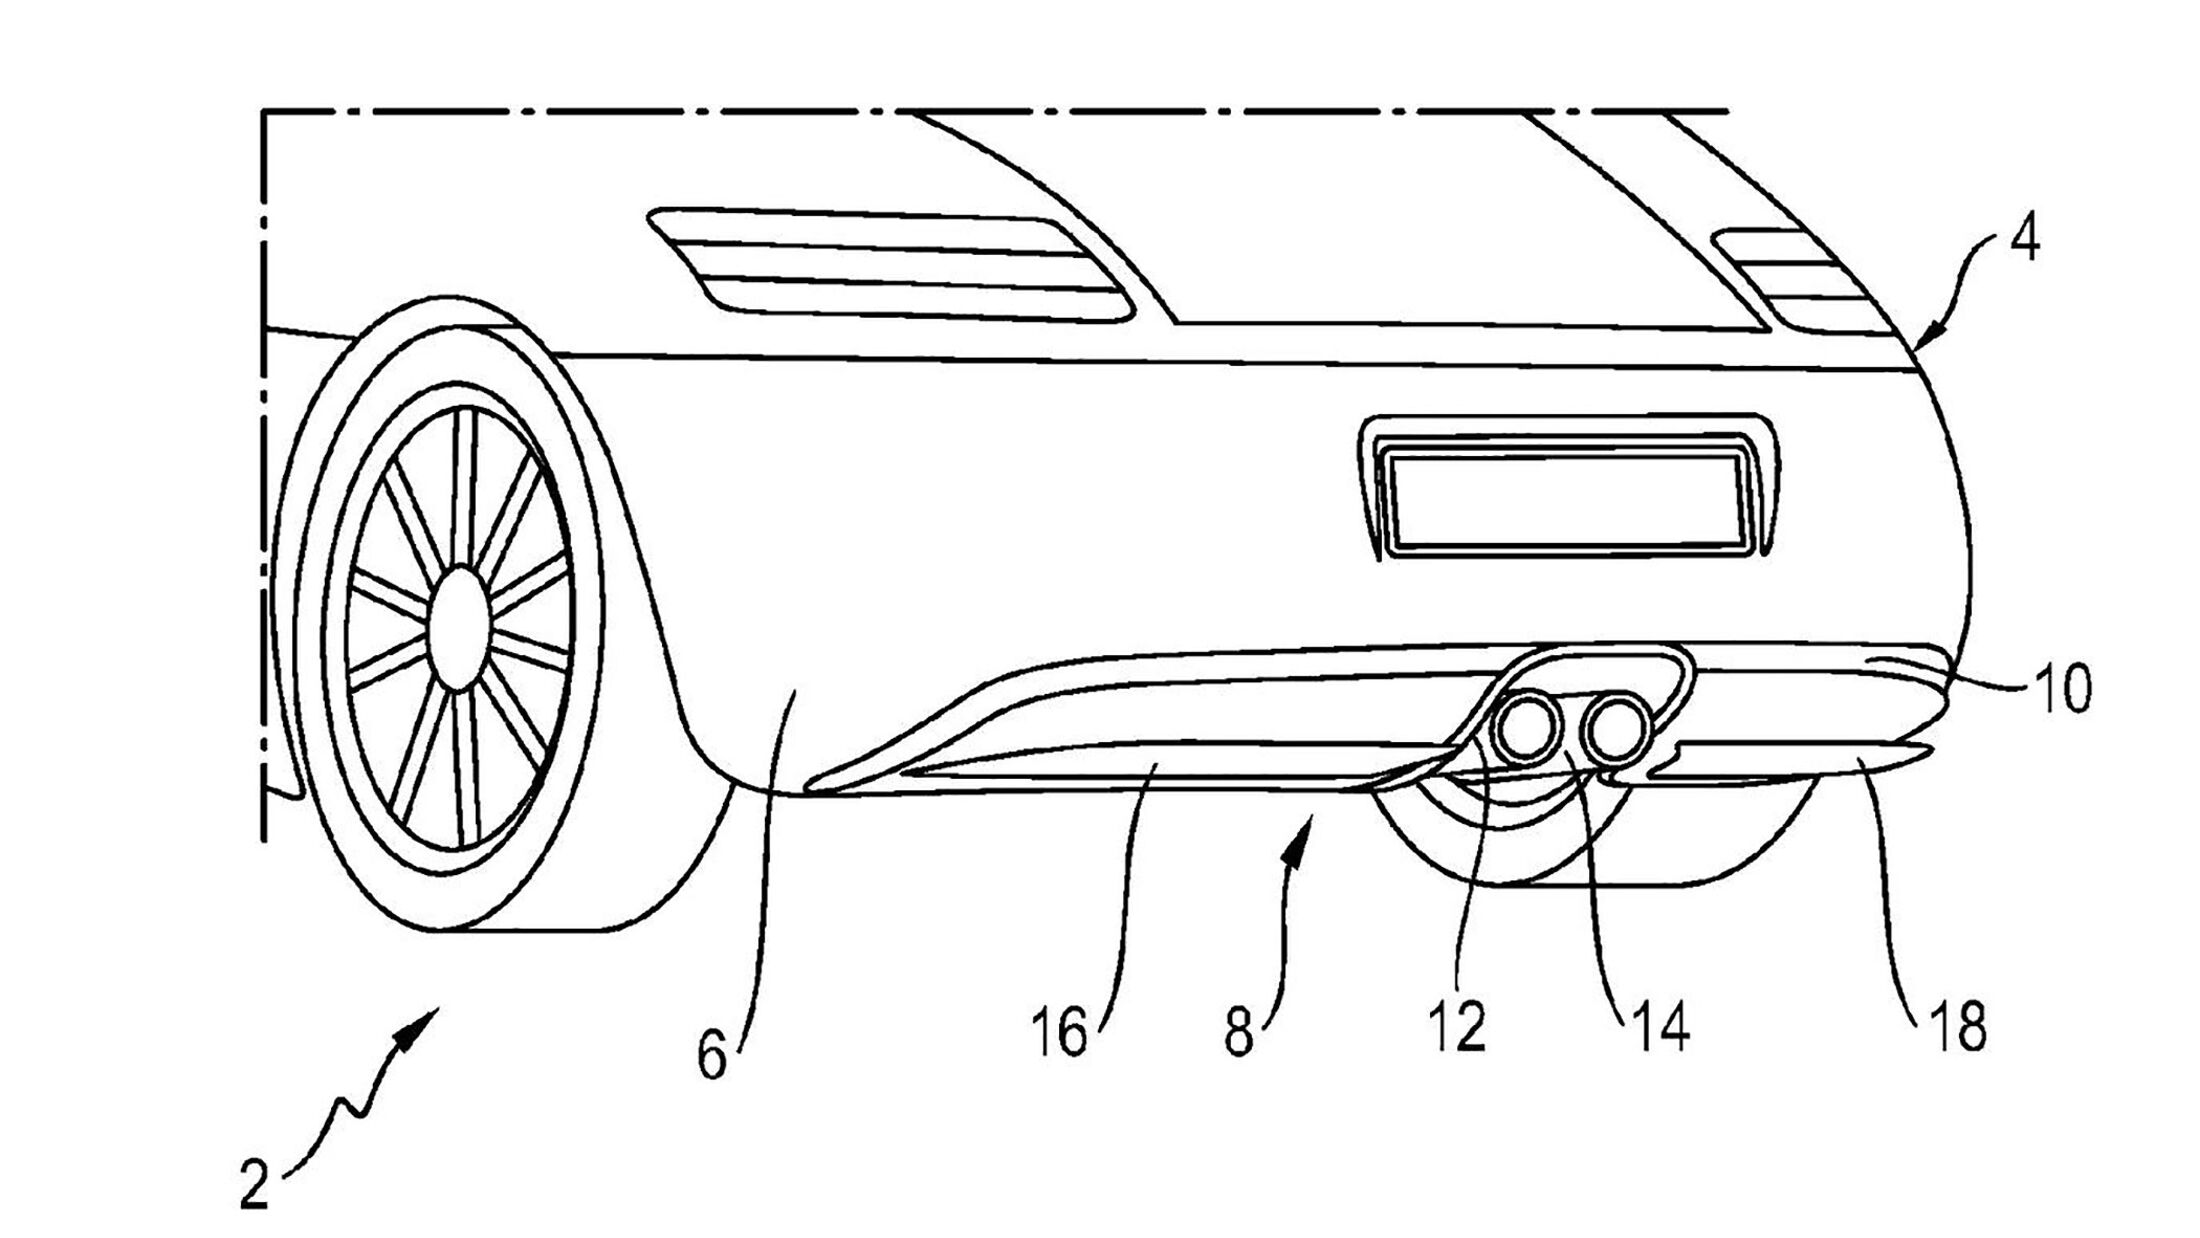 https://imgr1.auto-motor-und-sport.de/Porsche-Patentzeichnungen-aktiver-Diffusor-jsonLd16x9-a9c3ddc1-1068332.jpg